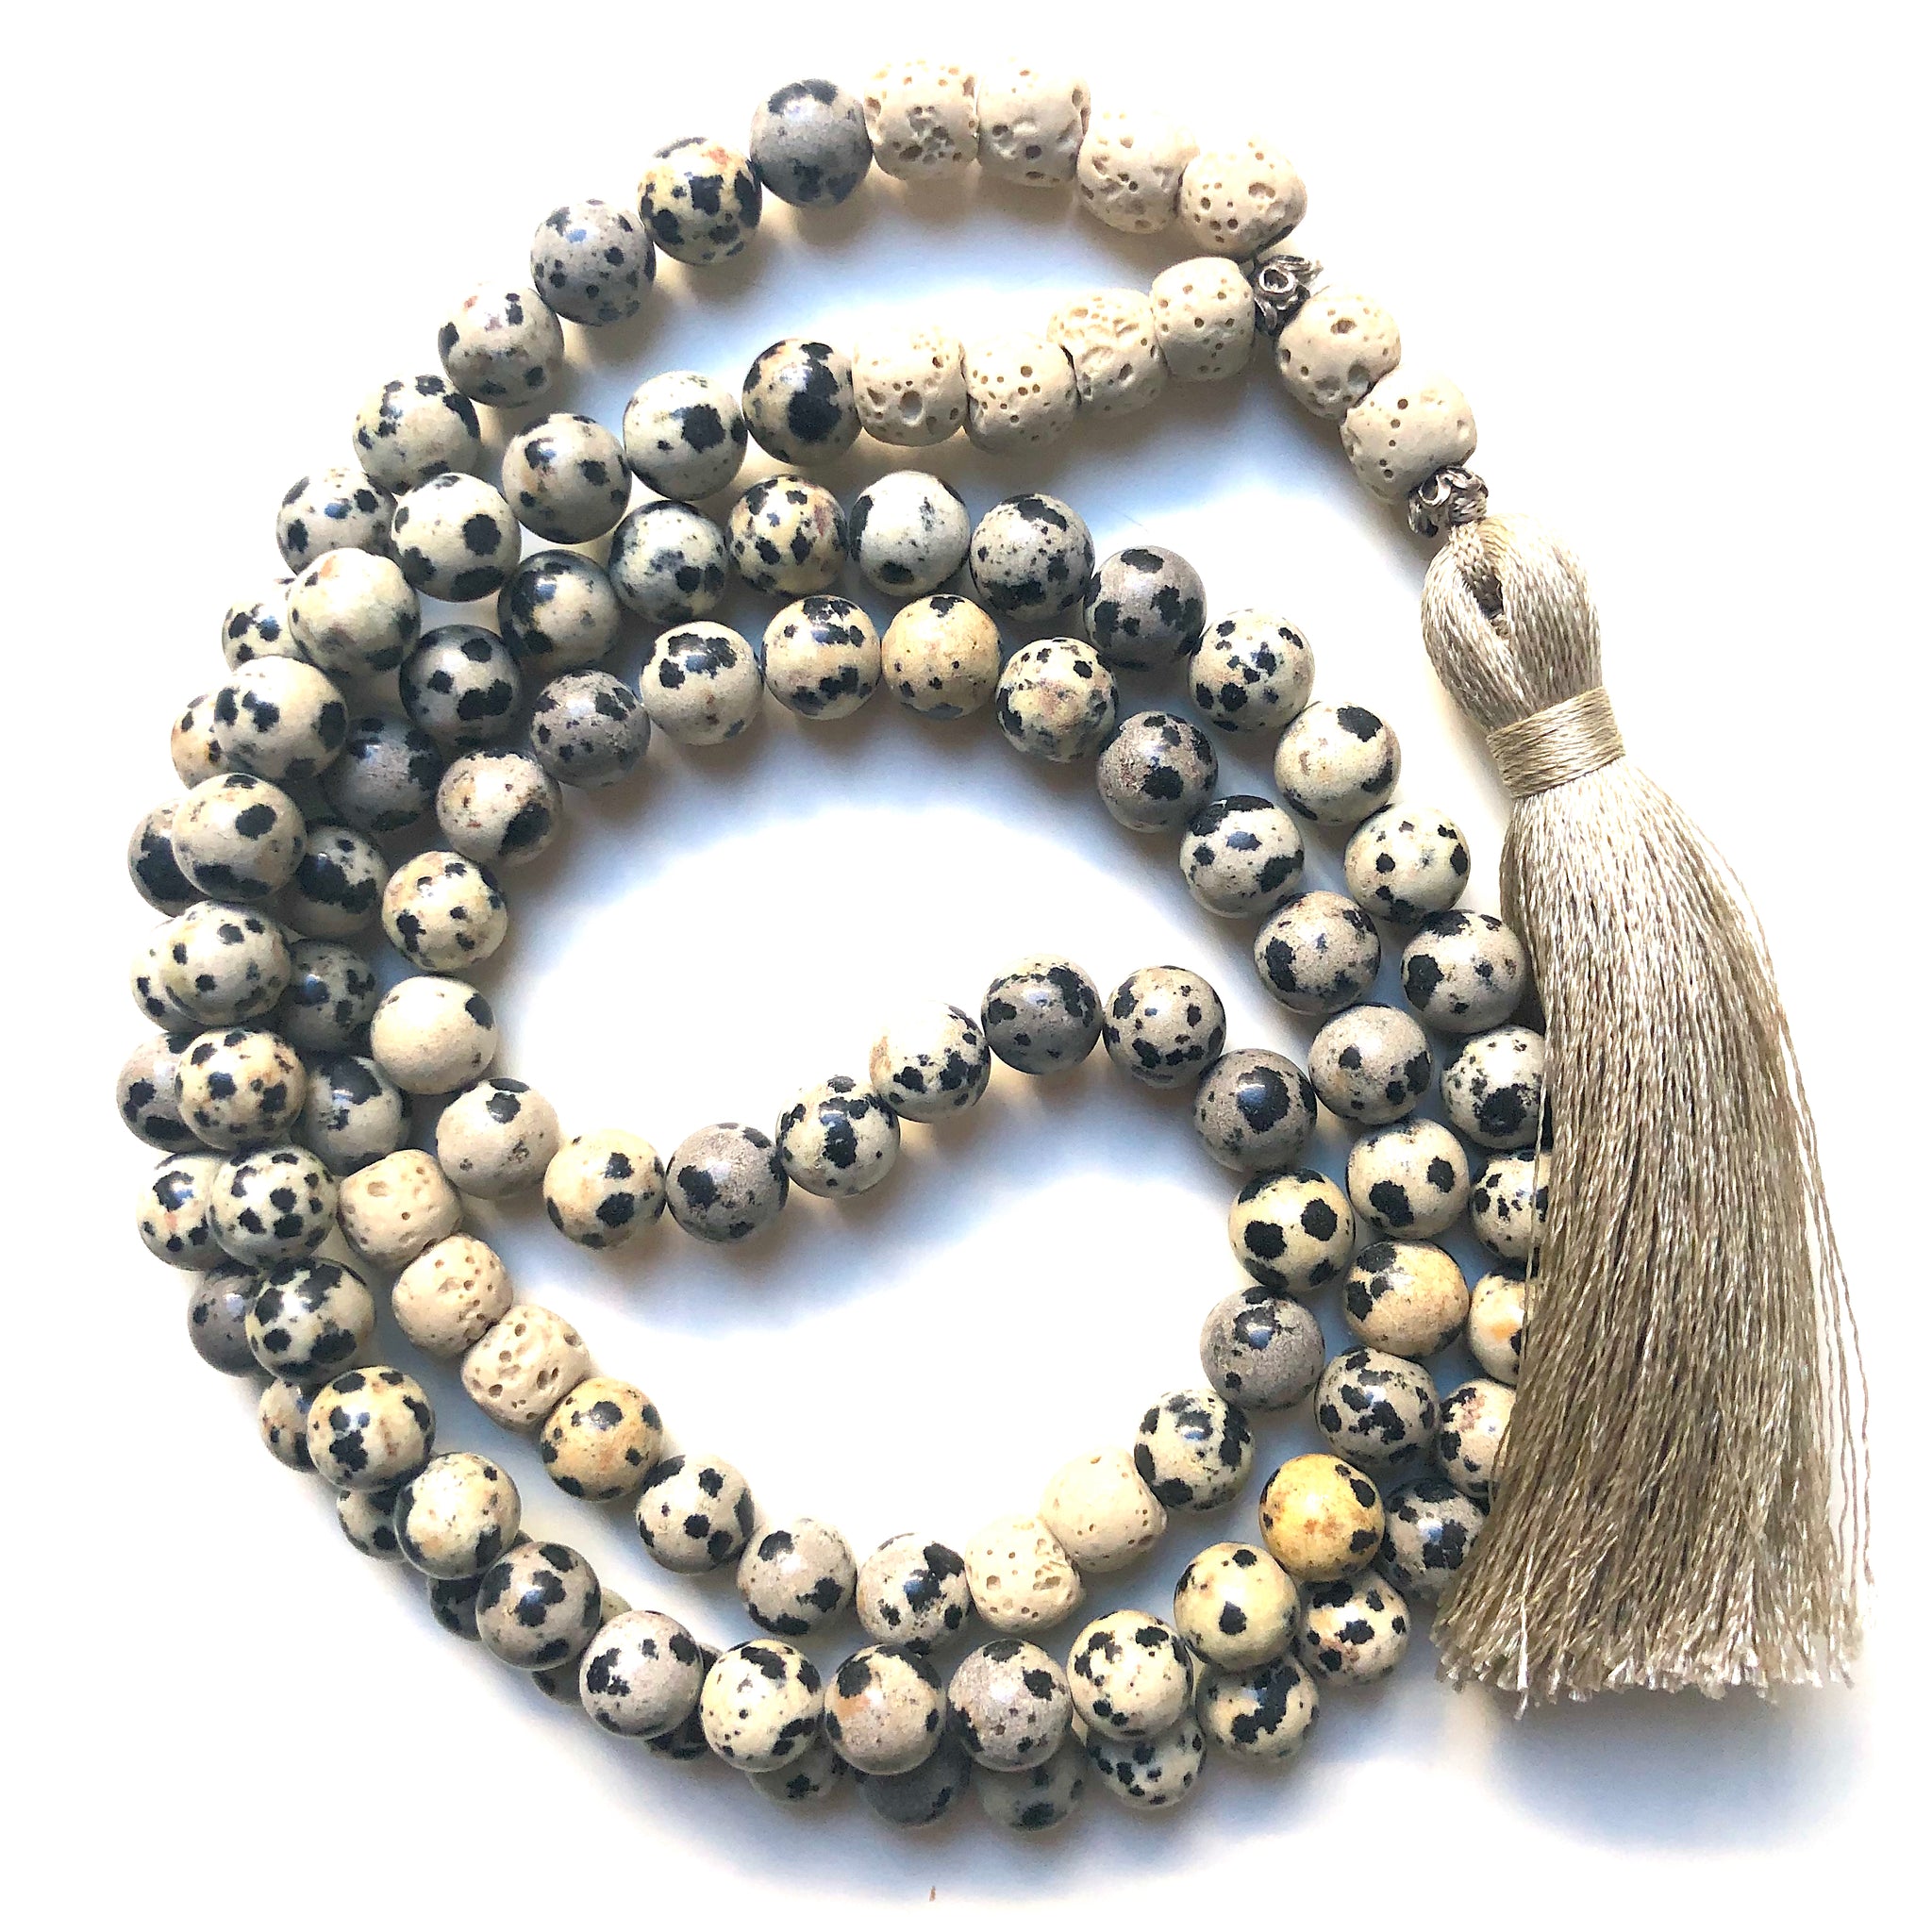 Lavastone Mala Beads, 108 Mala, Jasper Mala Necklace, Yoga Jewelry, Meditation Beads